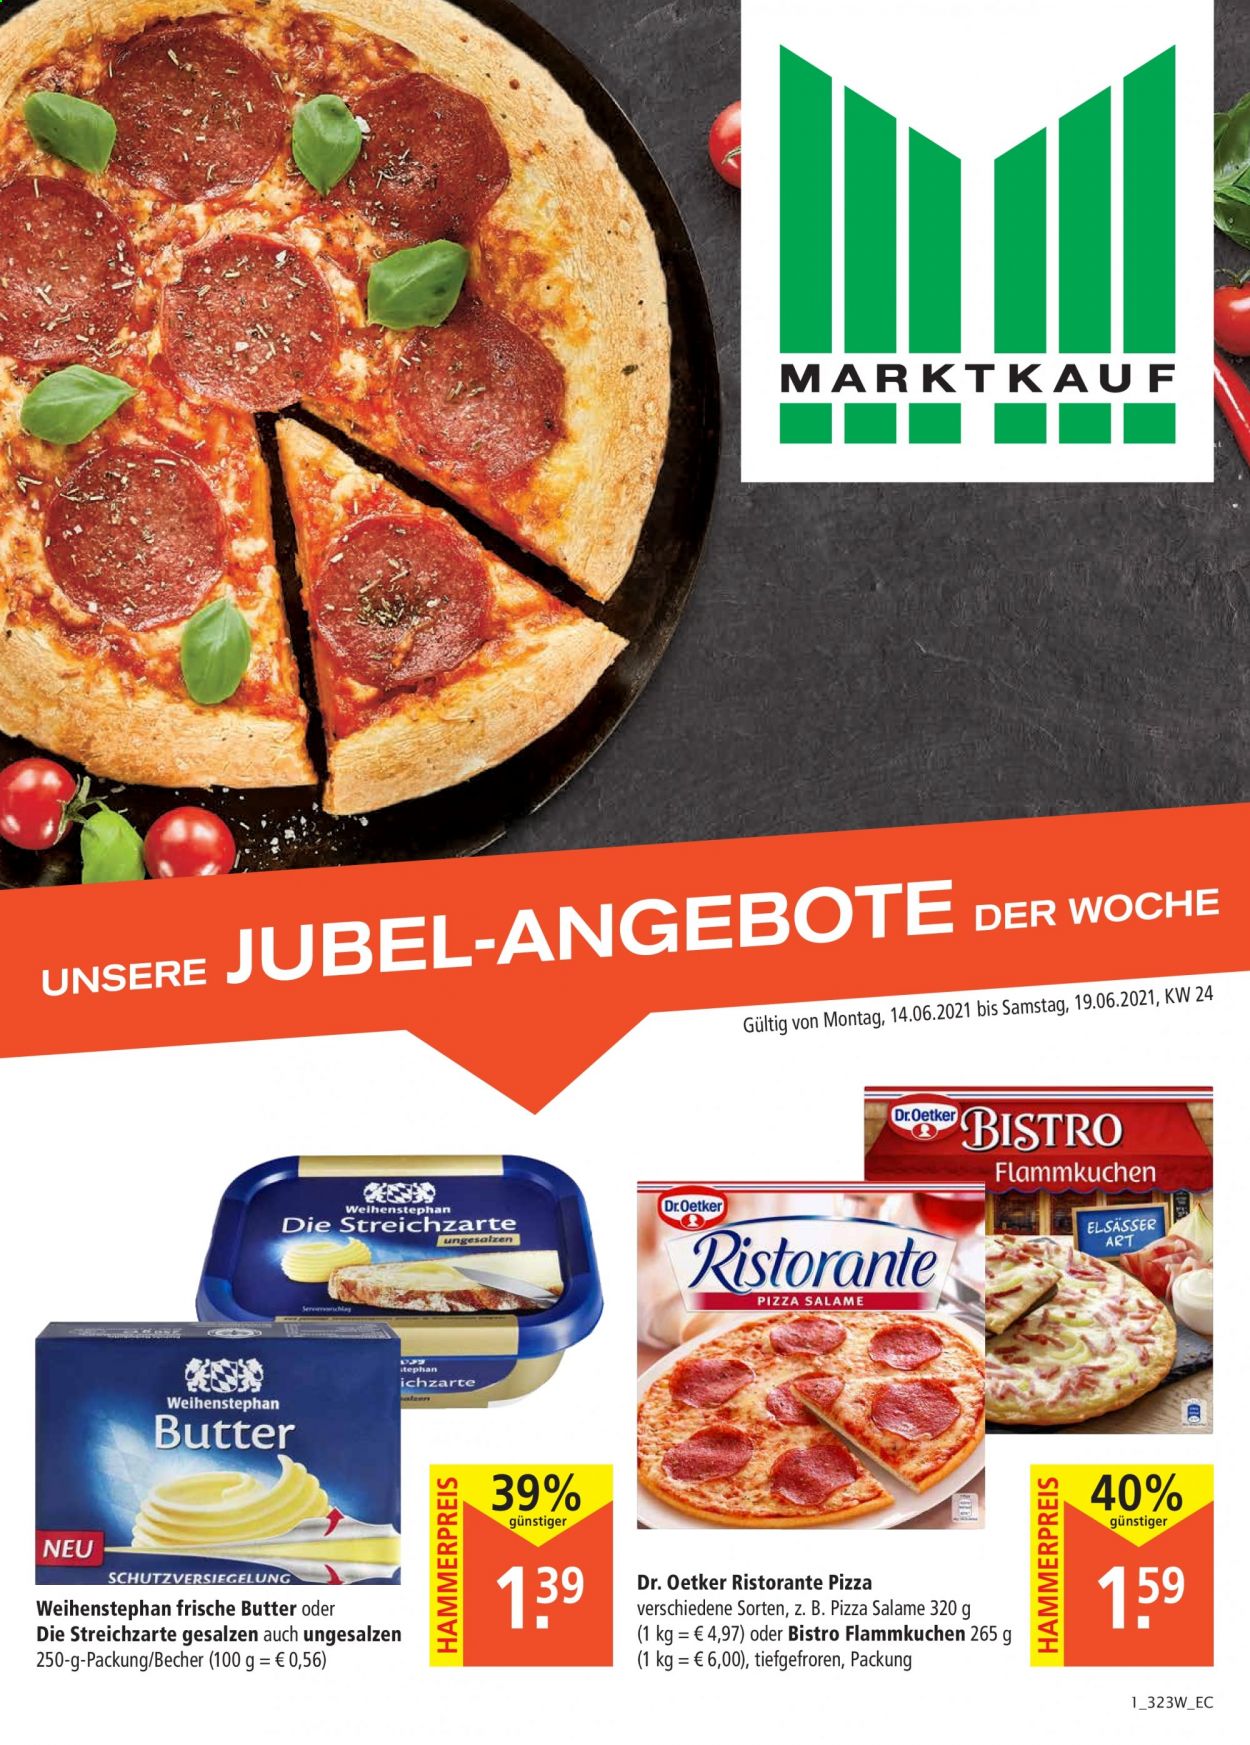 thumbnail - Prospekte Marktkauf - 14.06.2021 - 19.06.2021 - Produkte in Aktion - Weihenstephan, Pizza, Flammkuchen, Dr. Oetker, Butter, Ristorante Pizza. Seite 1.